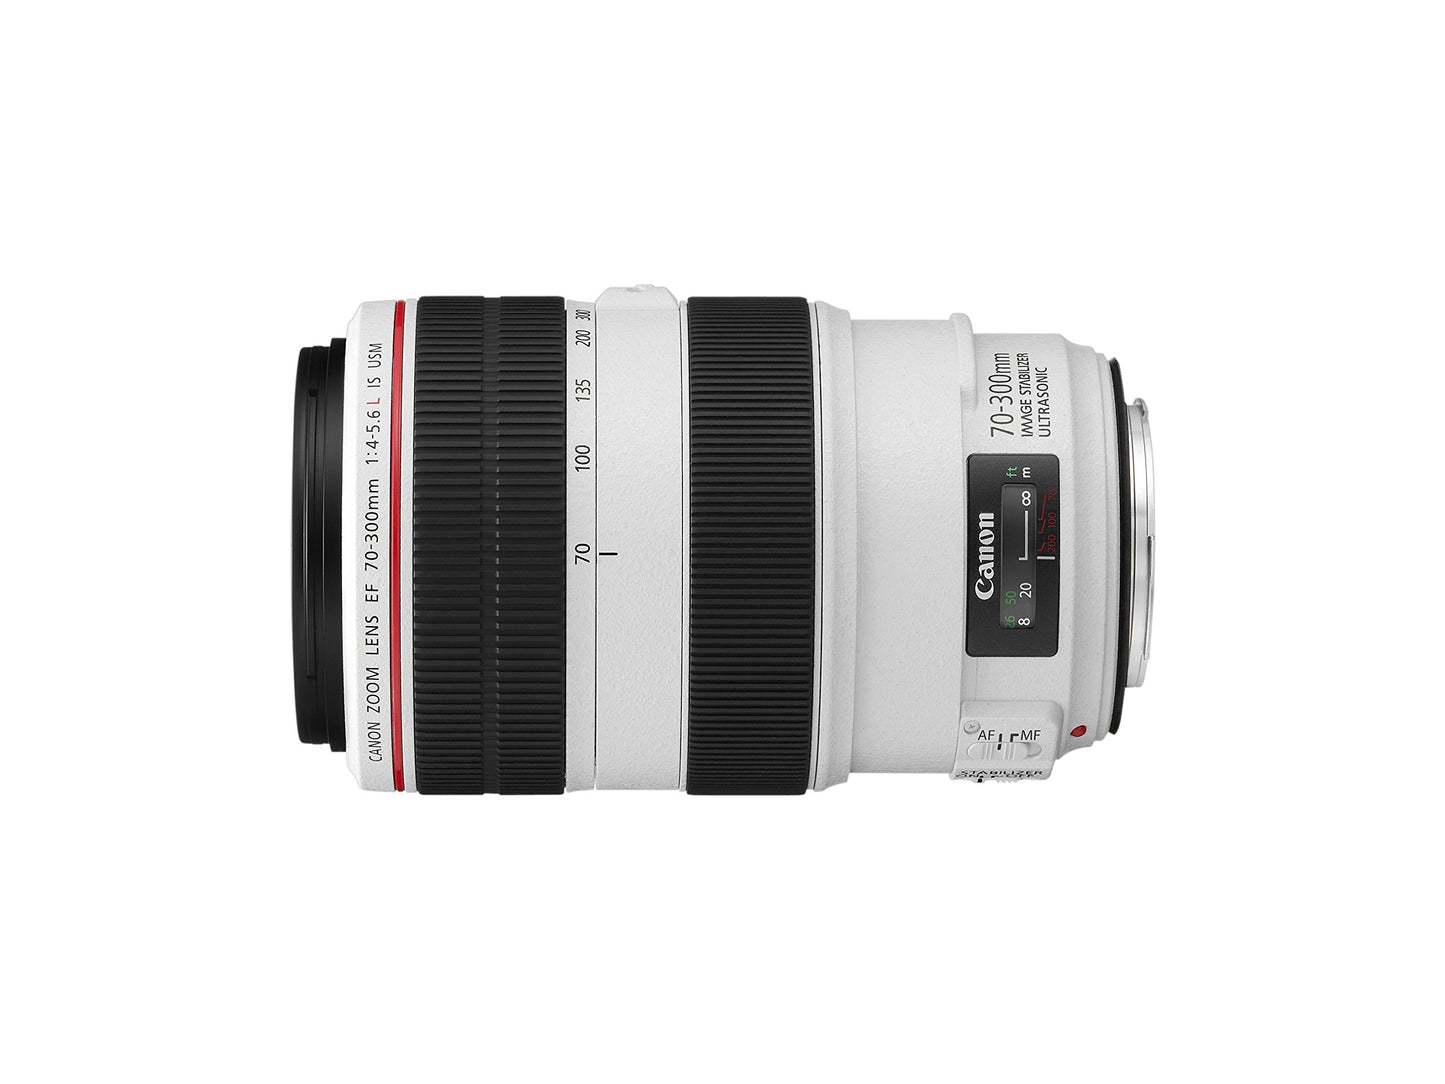 Canon EF 70-300mm f4-5.6L IS USM lens